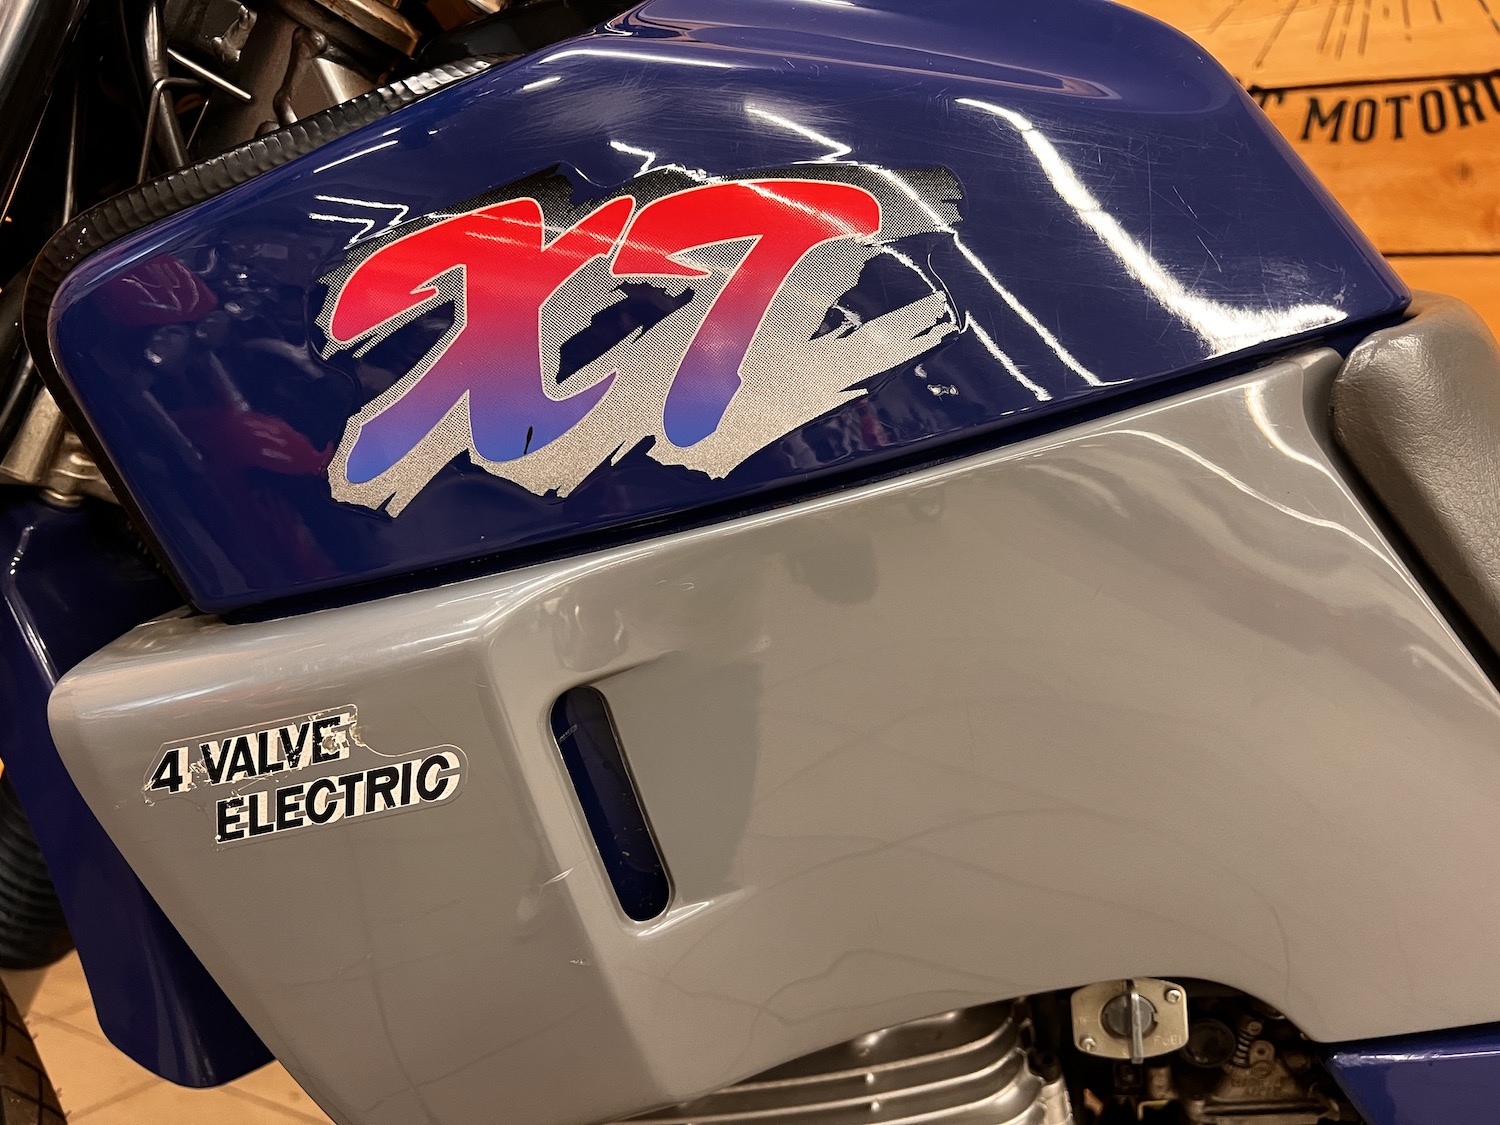 Yamaha_xt600e_Cezanne_classic_motorcycle_6-154.jpg